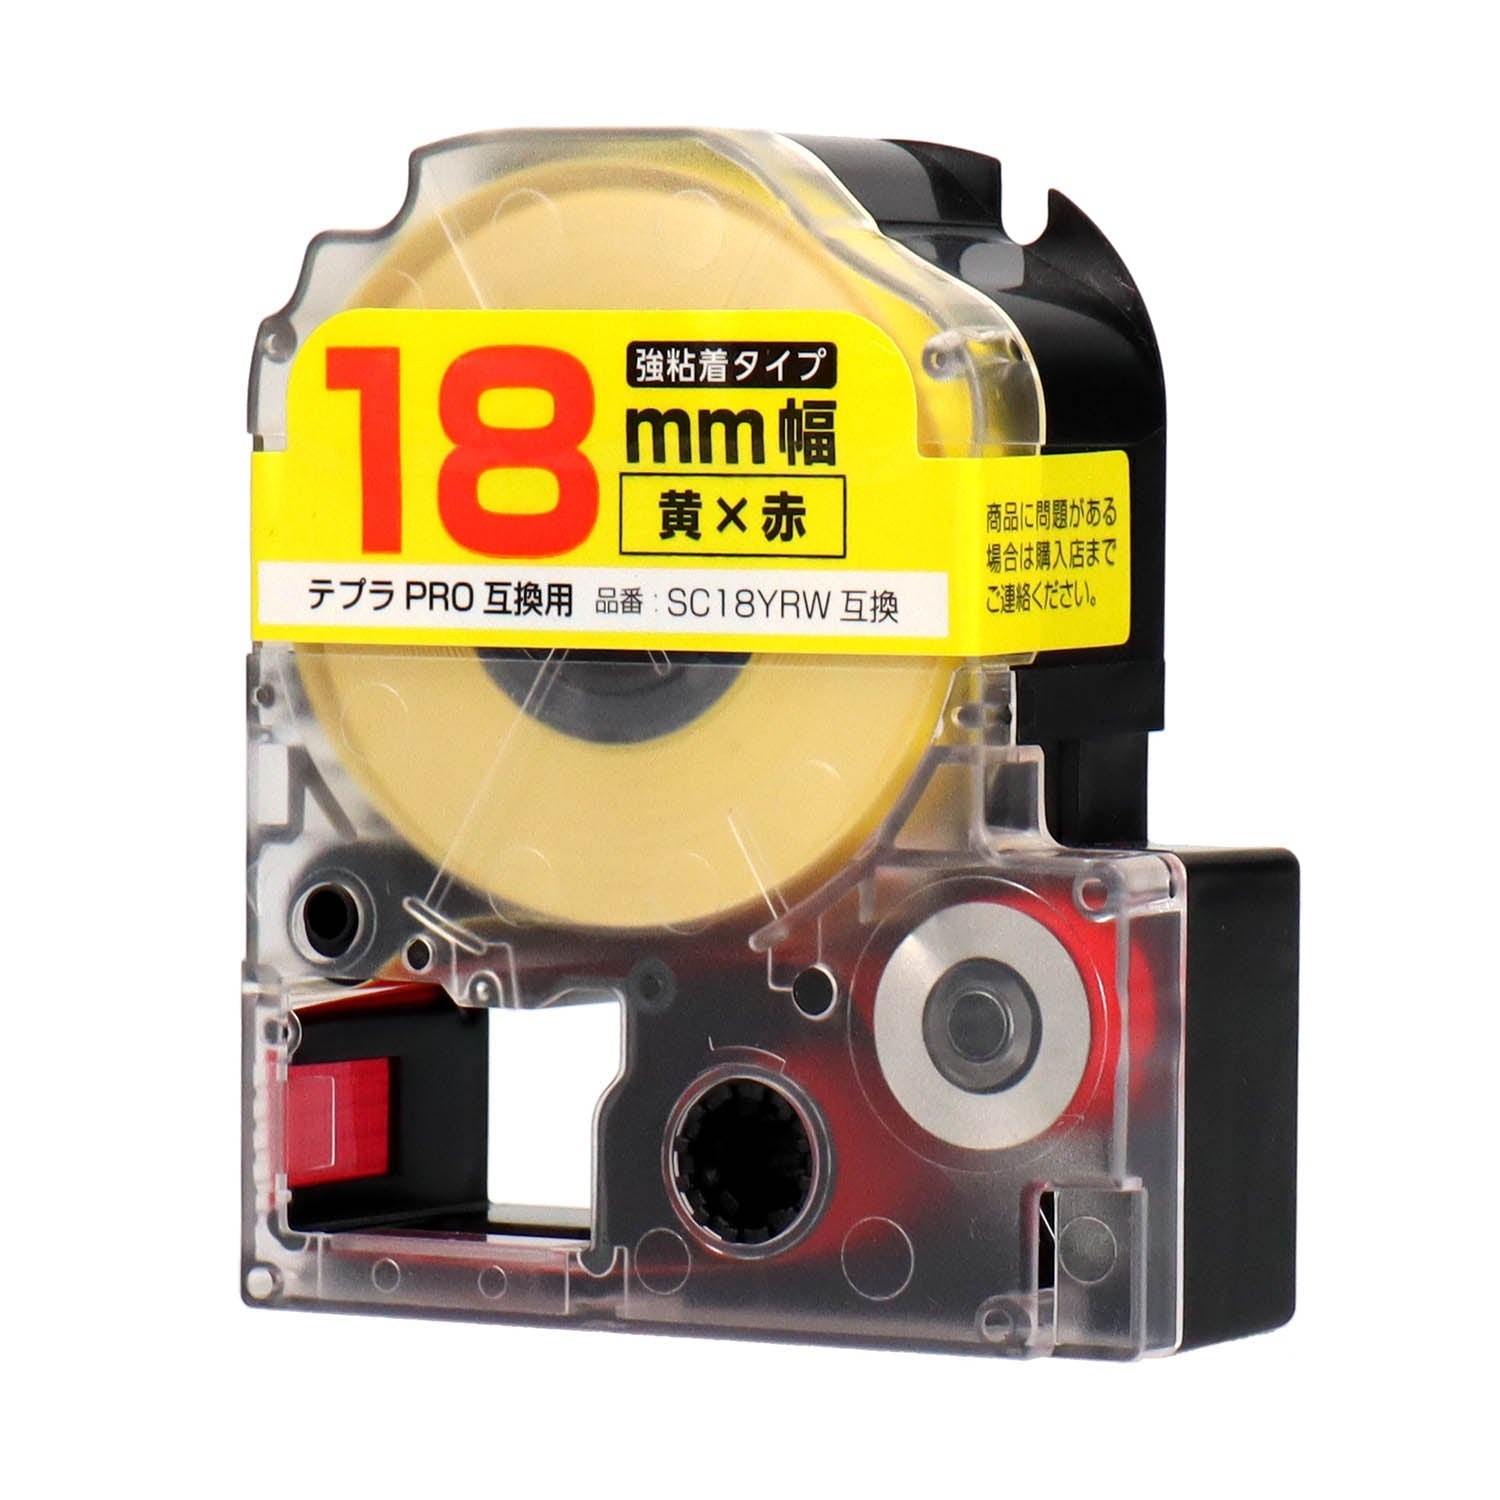 テプラPRO用互換テープカートリッジ 黄×赤文字 18mm